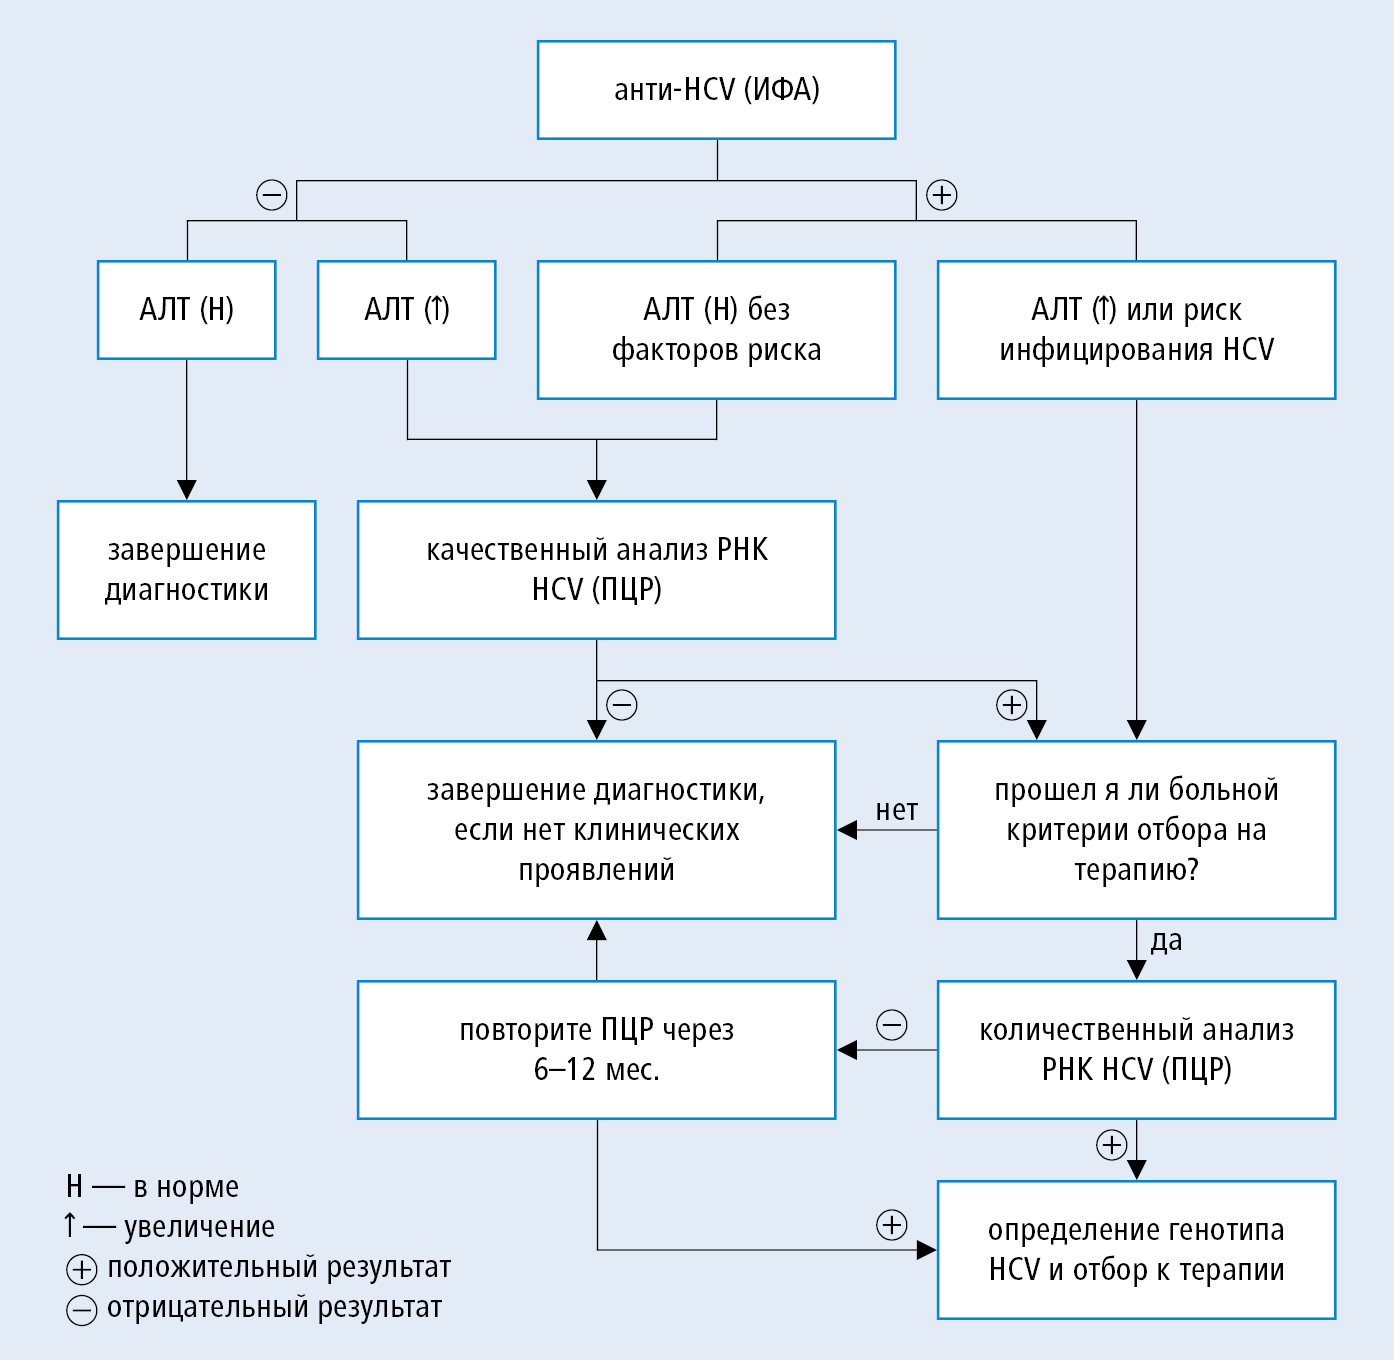 Схема лечения гепатита С для 2-4 генотипа